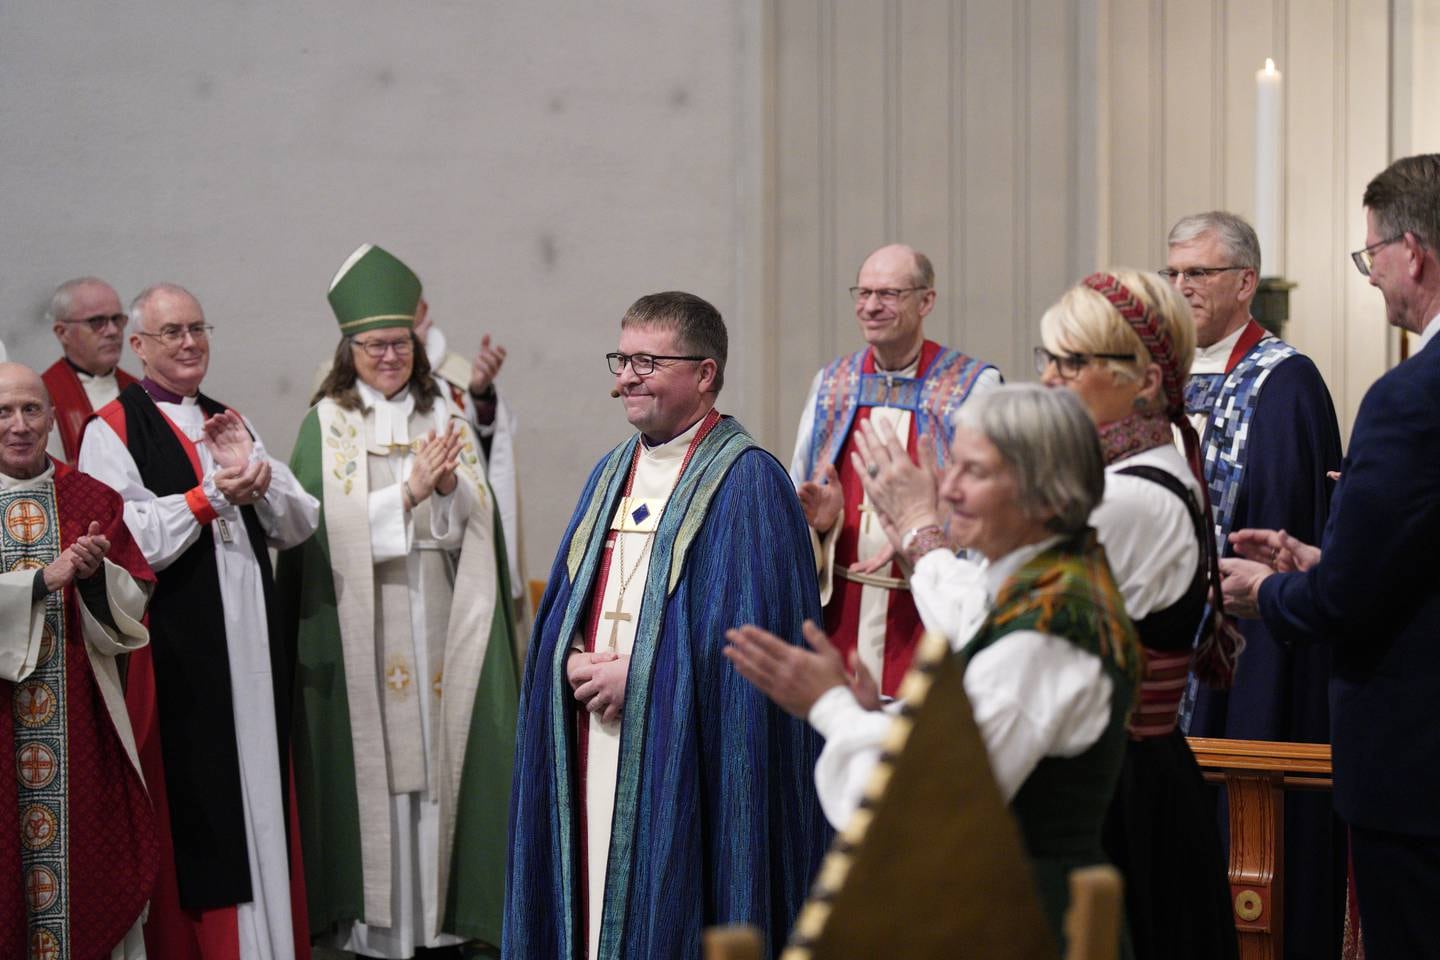 Forsamlingen under gudstjenesten i Bodø domkirke møtte Svein Valle med applaus etter at han fikk bispekorset hengt rundt halsen og var vigslet til biskop i Sør-Hålogaland bispedømme.
Foto: David Engmo / NTB